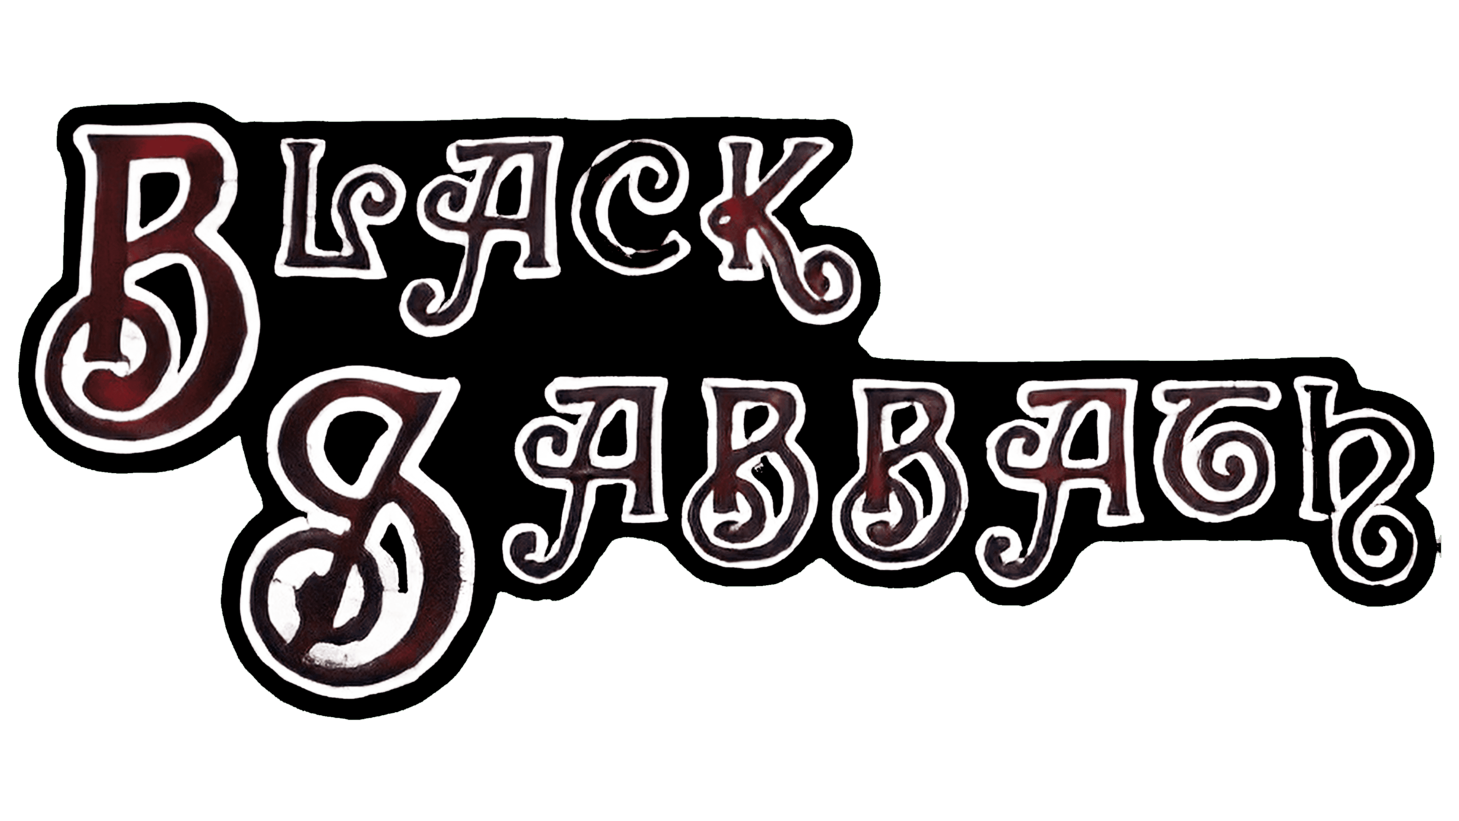 Black sabbath sign 1969